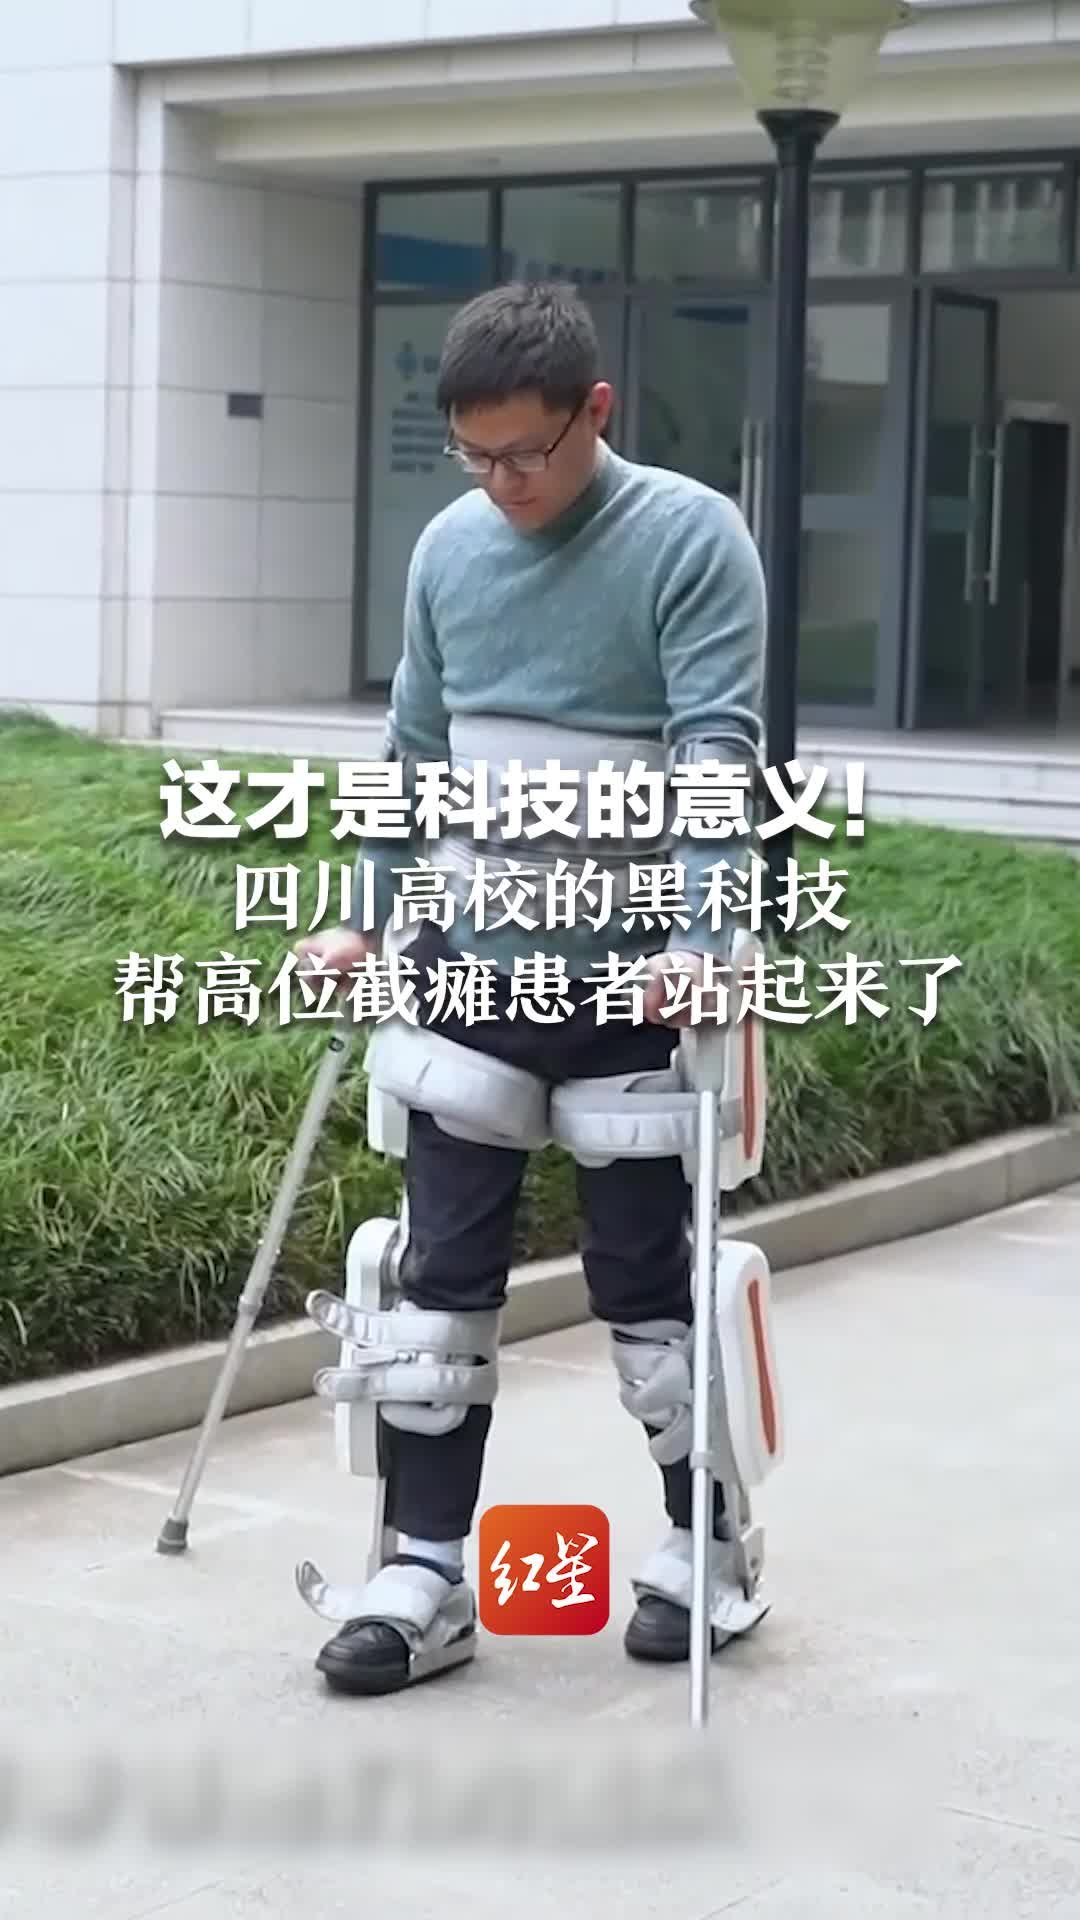 这才是科技的意义！四川高校的黑科技帮高位截瘫患者站起来了